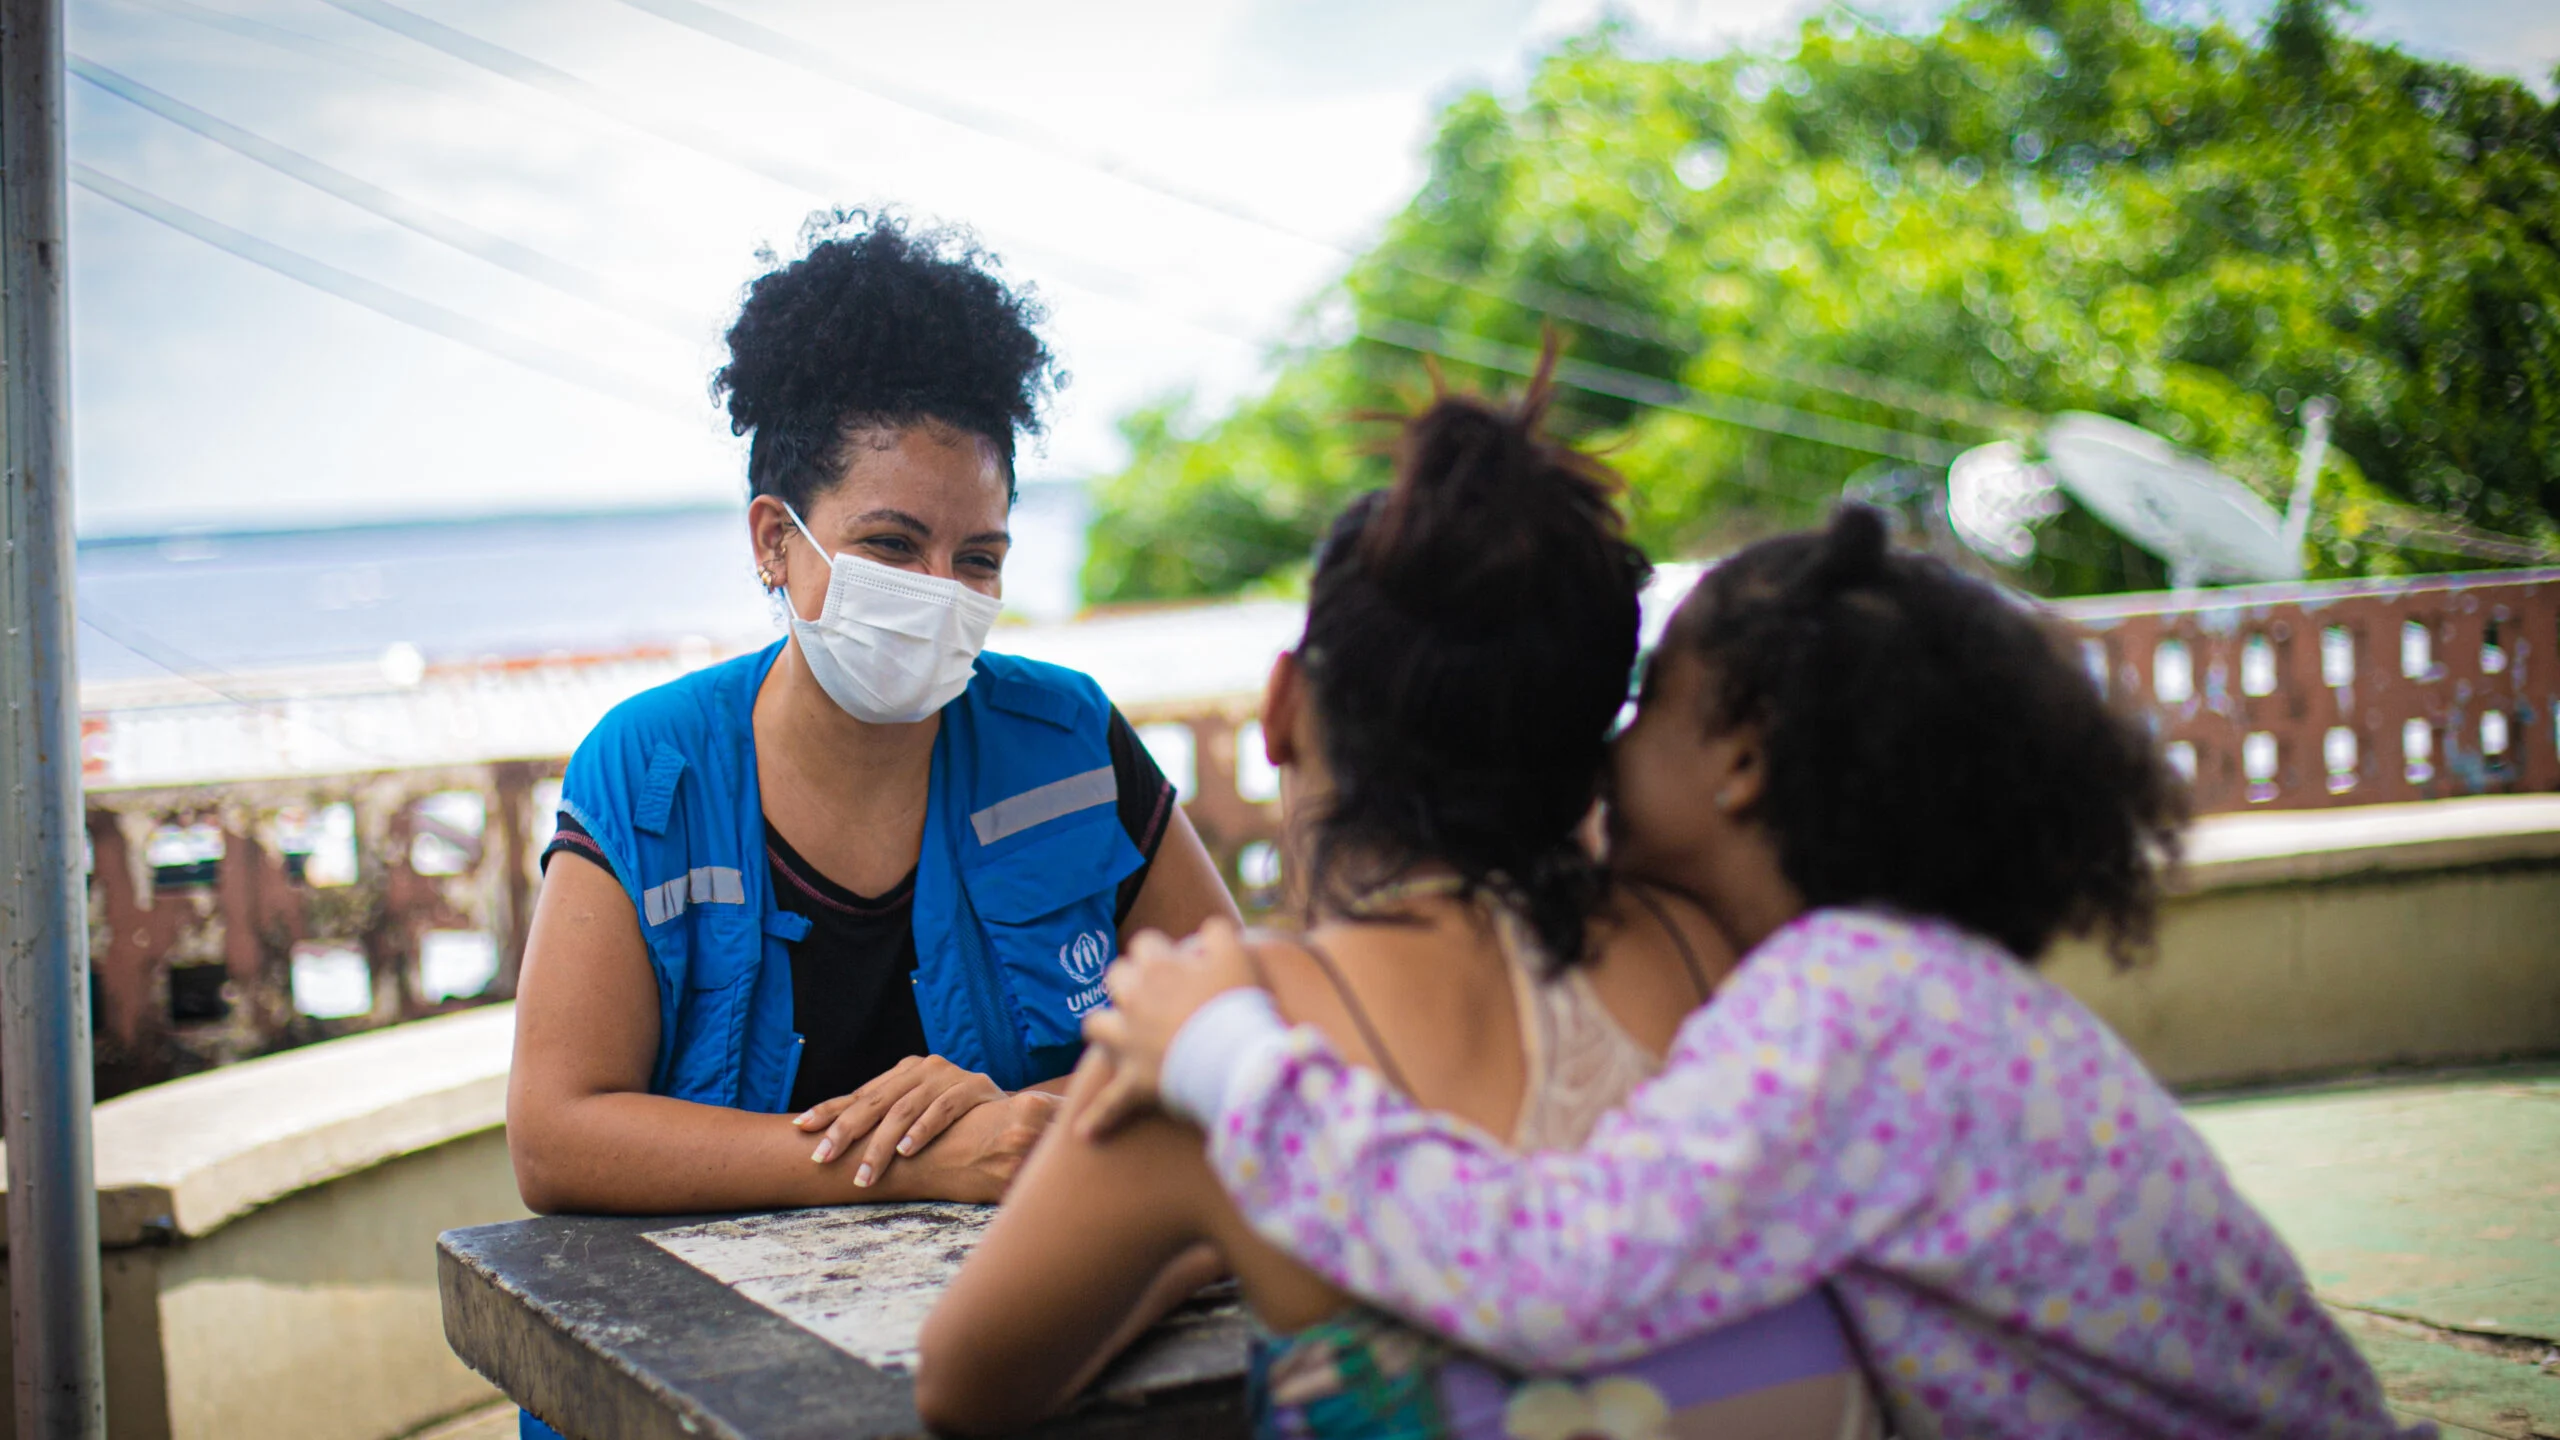 O ACNUR oferece proteção às mulheres e meninas em todas as etapas do deslocamento forçado ©ACNUR/Felipe Irnaldo